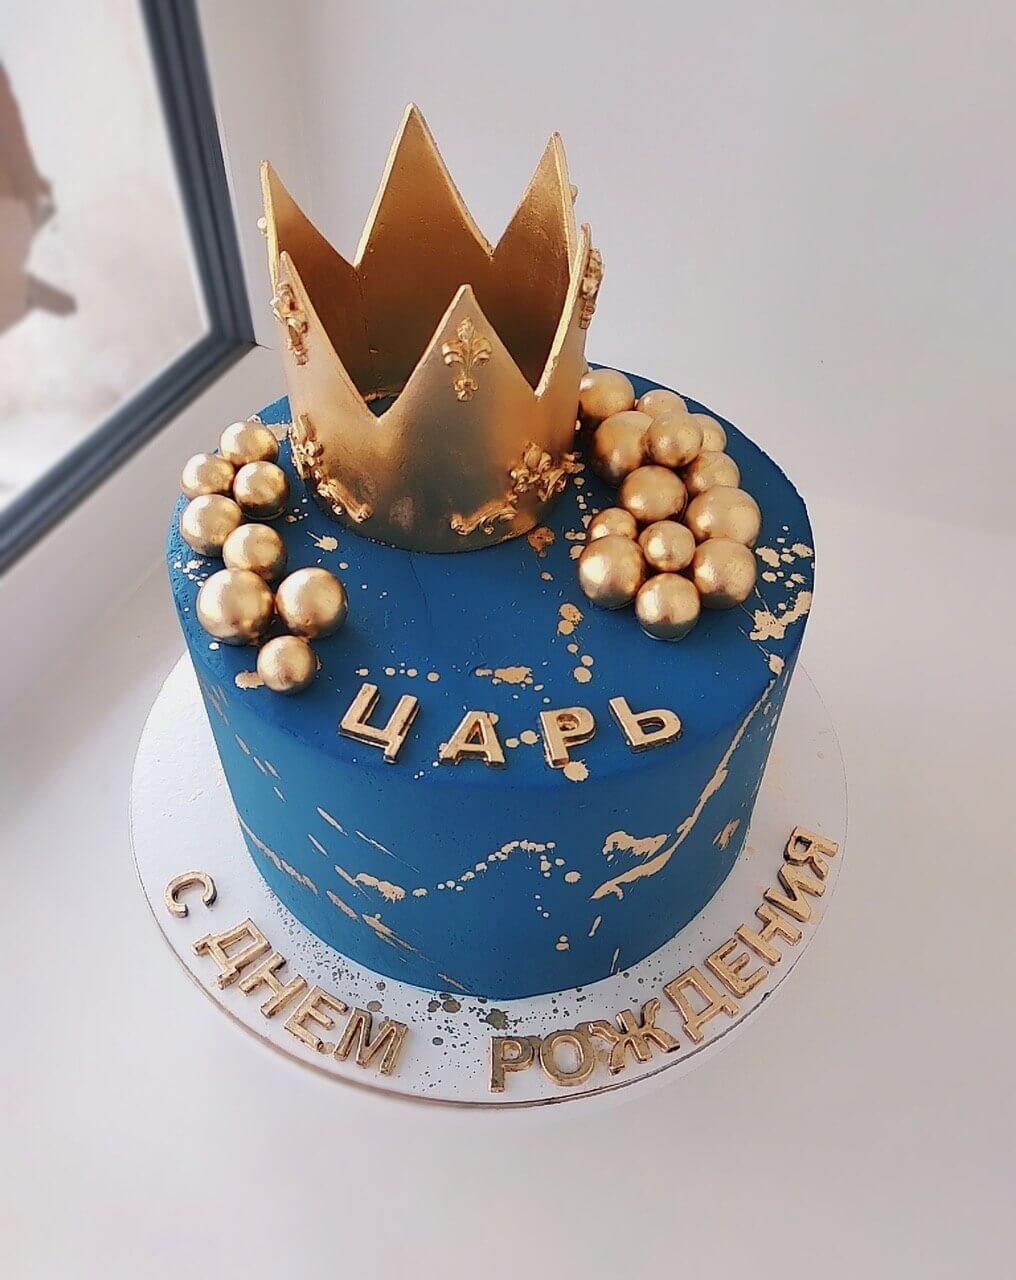 Торт "Царь"